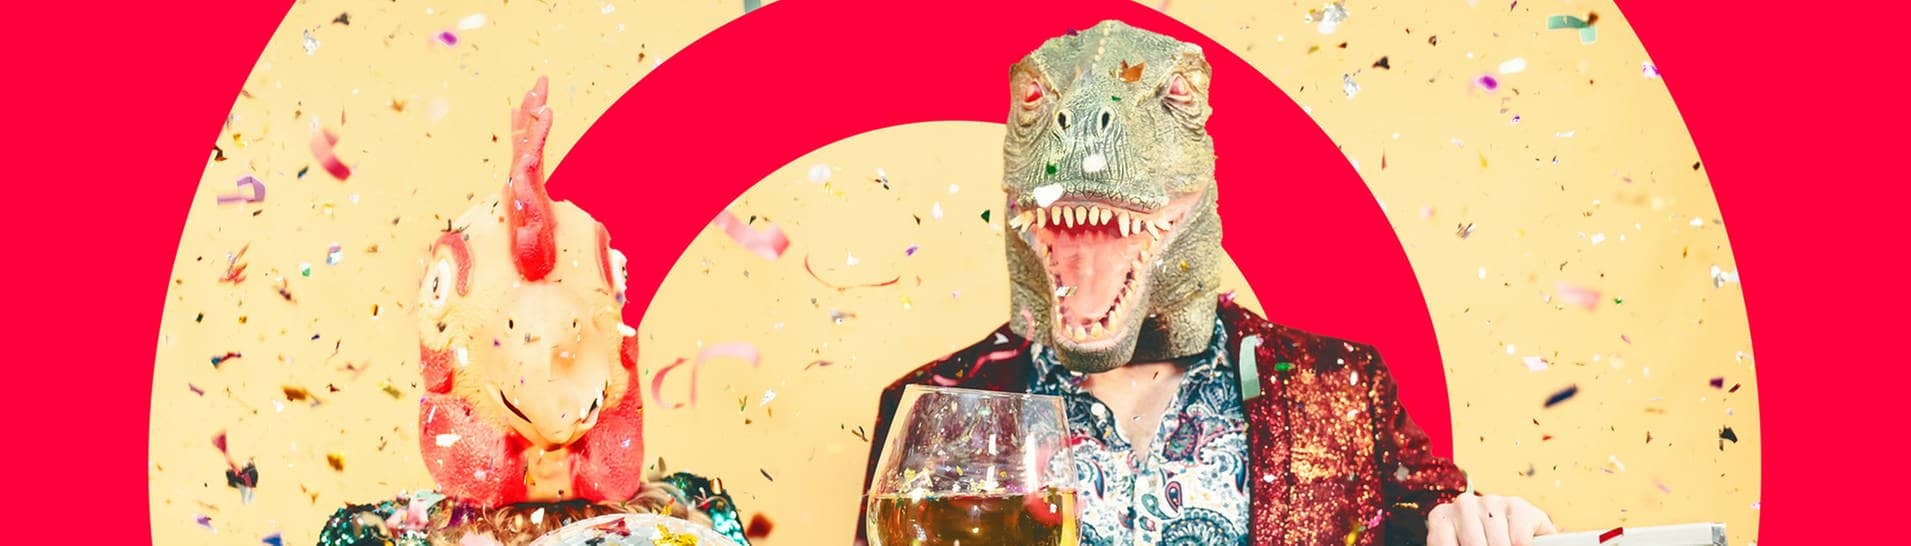 Zwei verkleidete Menschen mit Tier-Masken, einer Disco-Kugel und einem Weinglas: An Pfingstmontag spielt SWR3 wieder verrückt (Foto: Adobe Stock, Alessandro Biascioli)